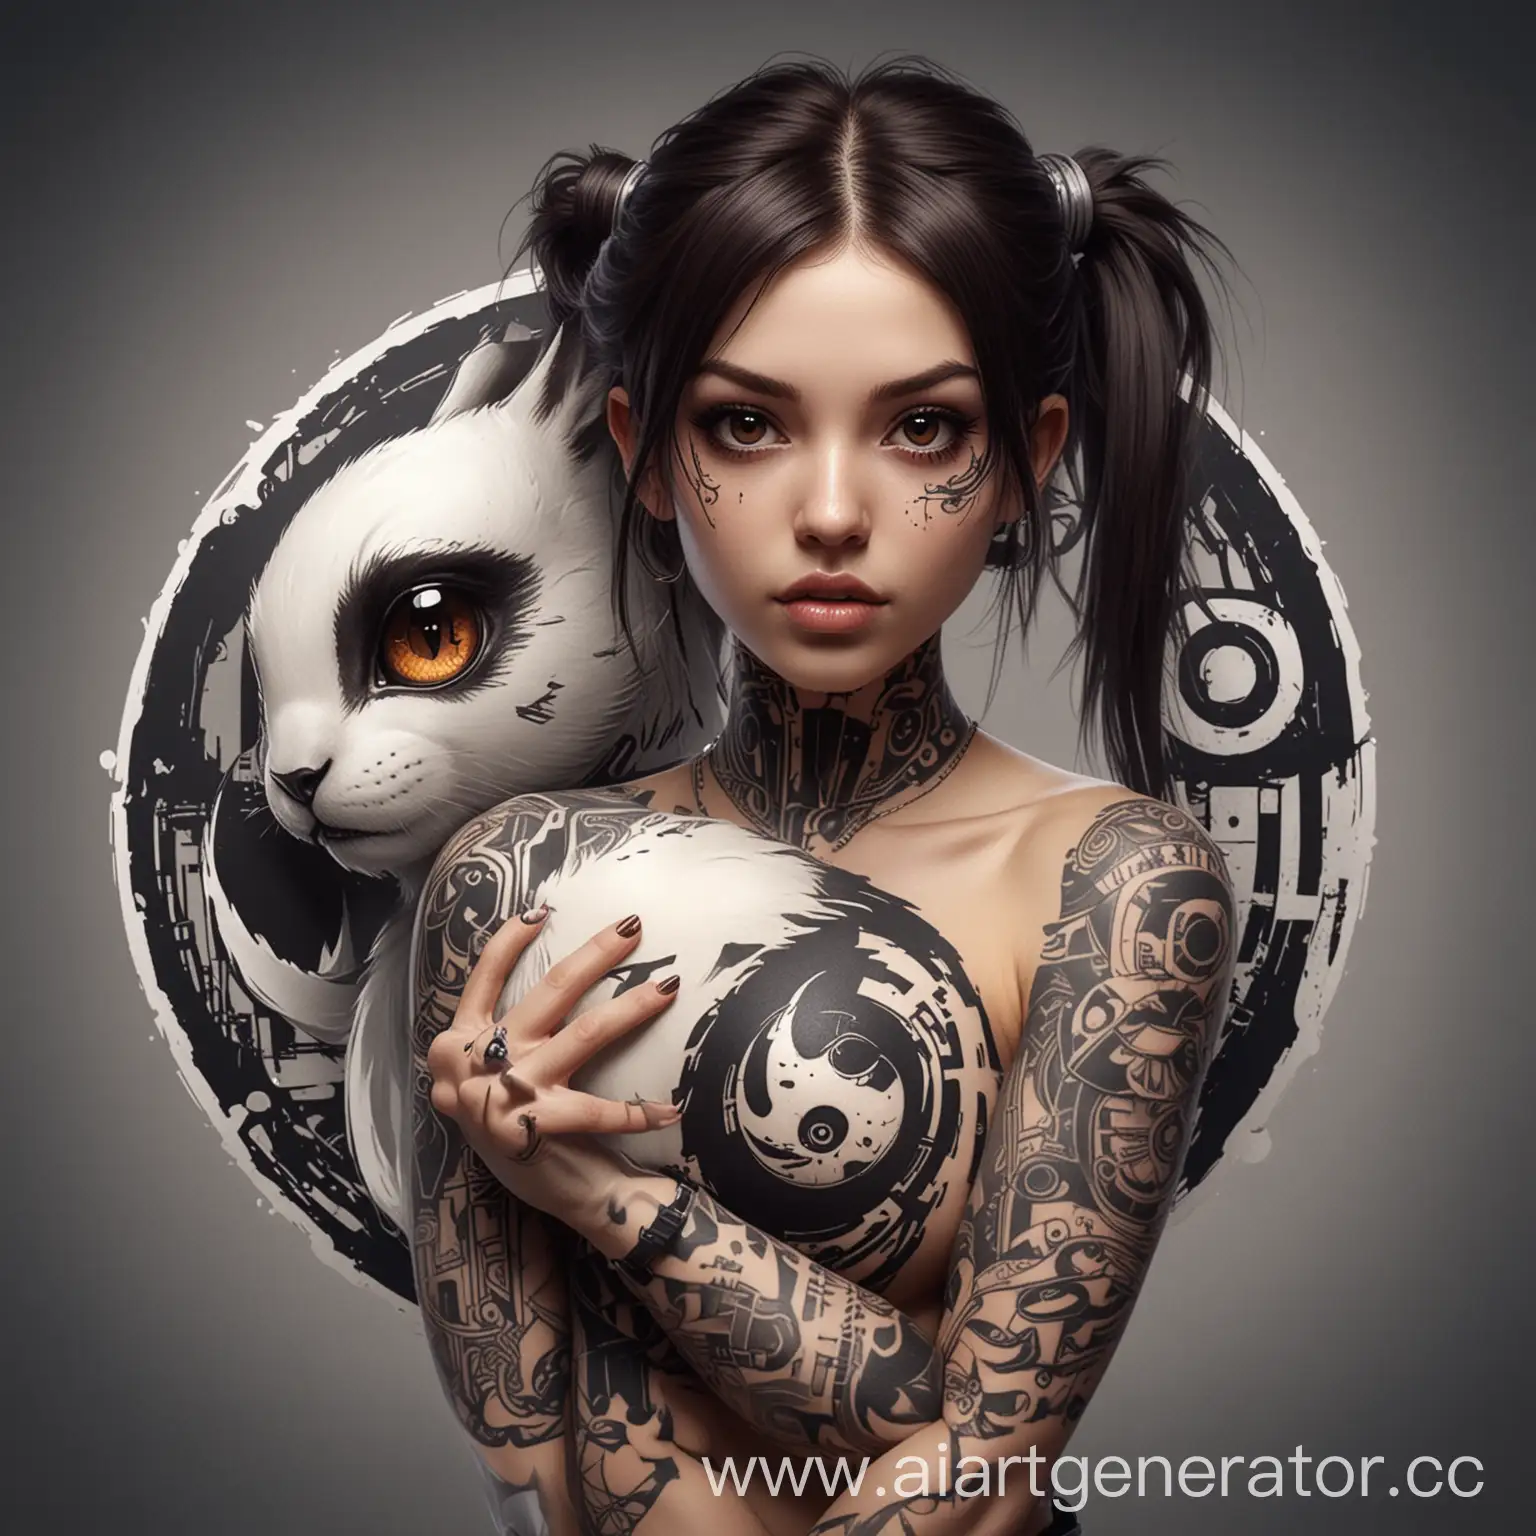 сгенерируй картинку с девочкой под ником BunsBun в стиле киберпанка с татуировкой инь янь , коричневыми глазами  и темными волосами